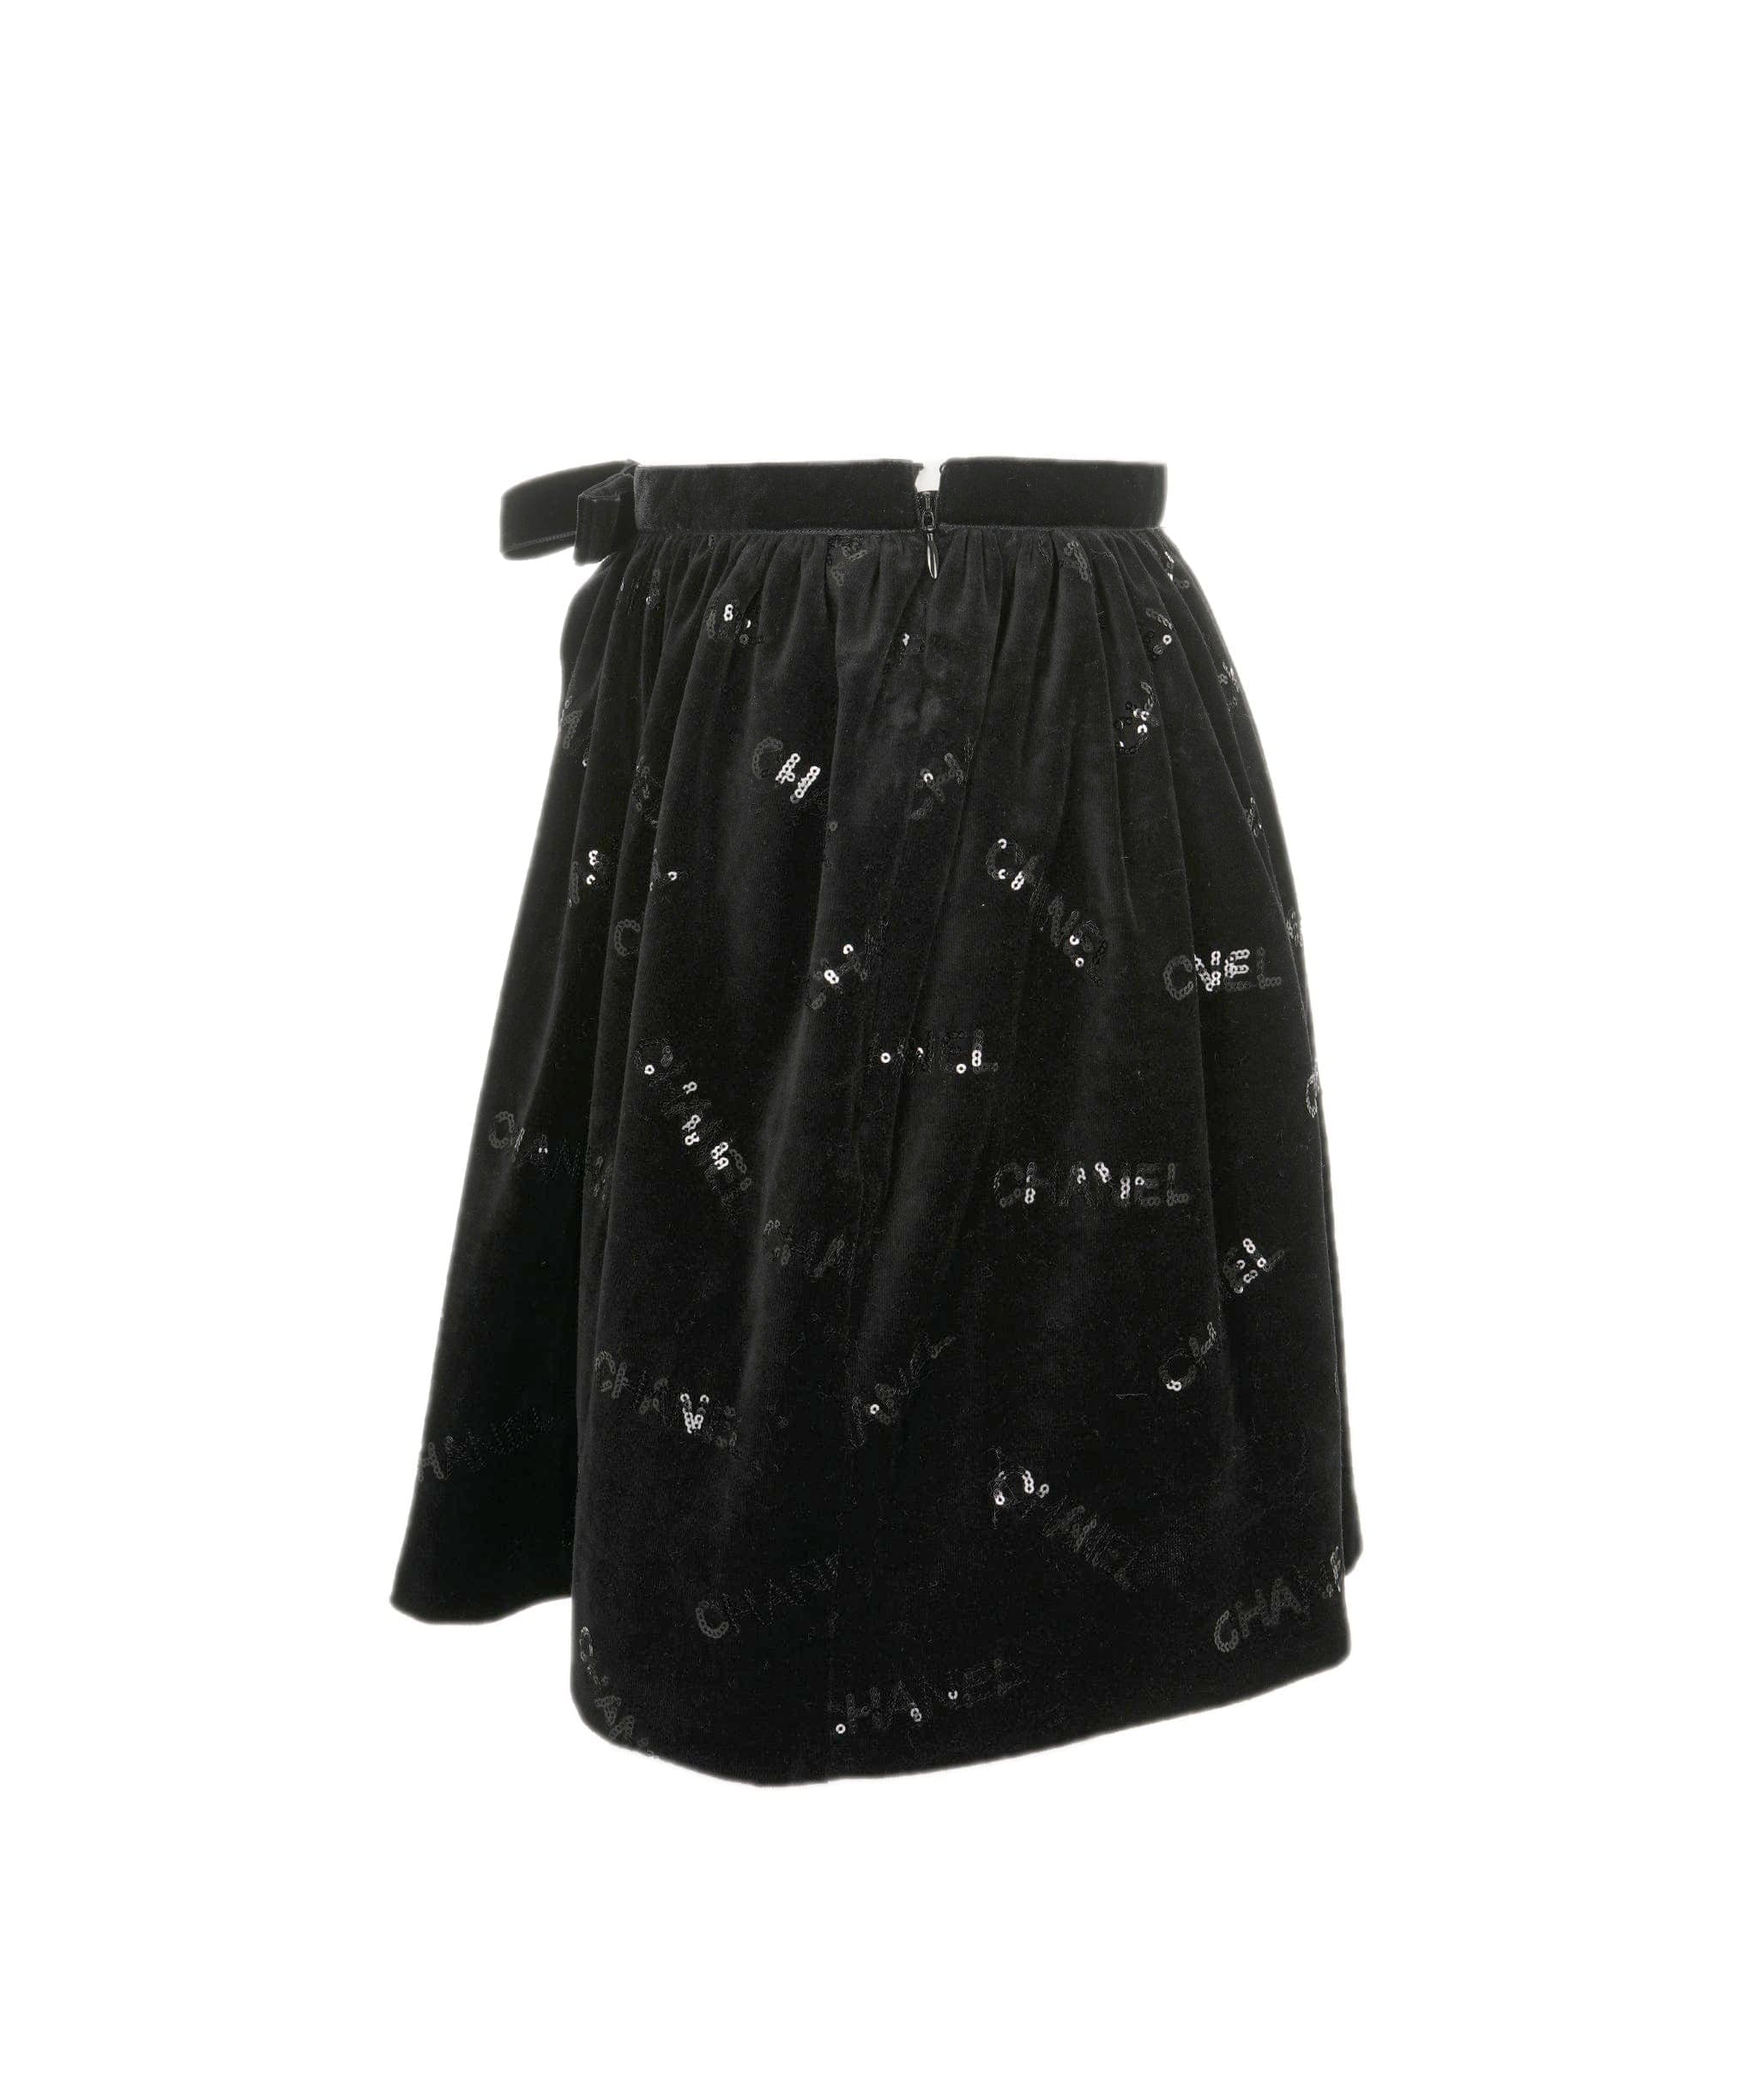 Chanel Chanel Skirt black velvet with sequins FR34 P73382V64928 AVC1128